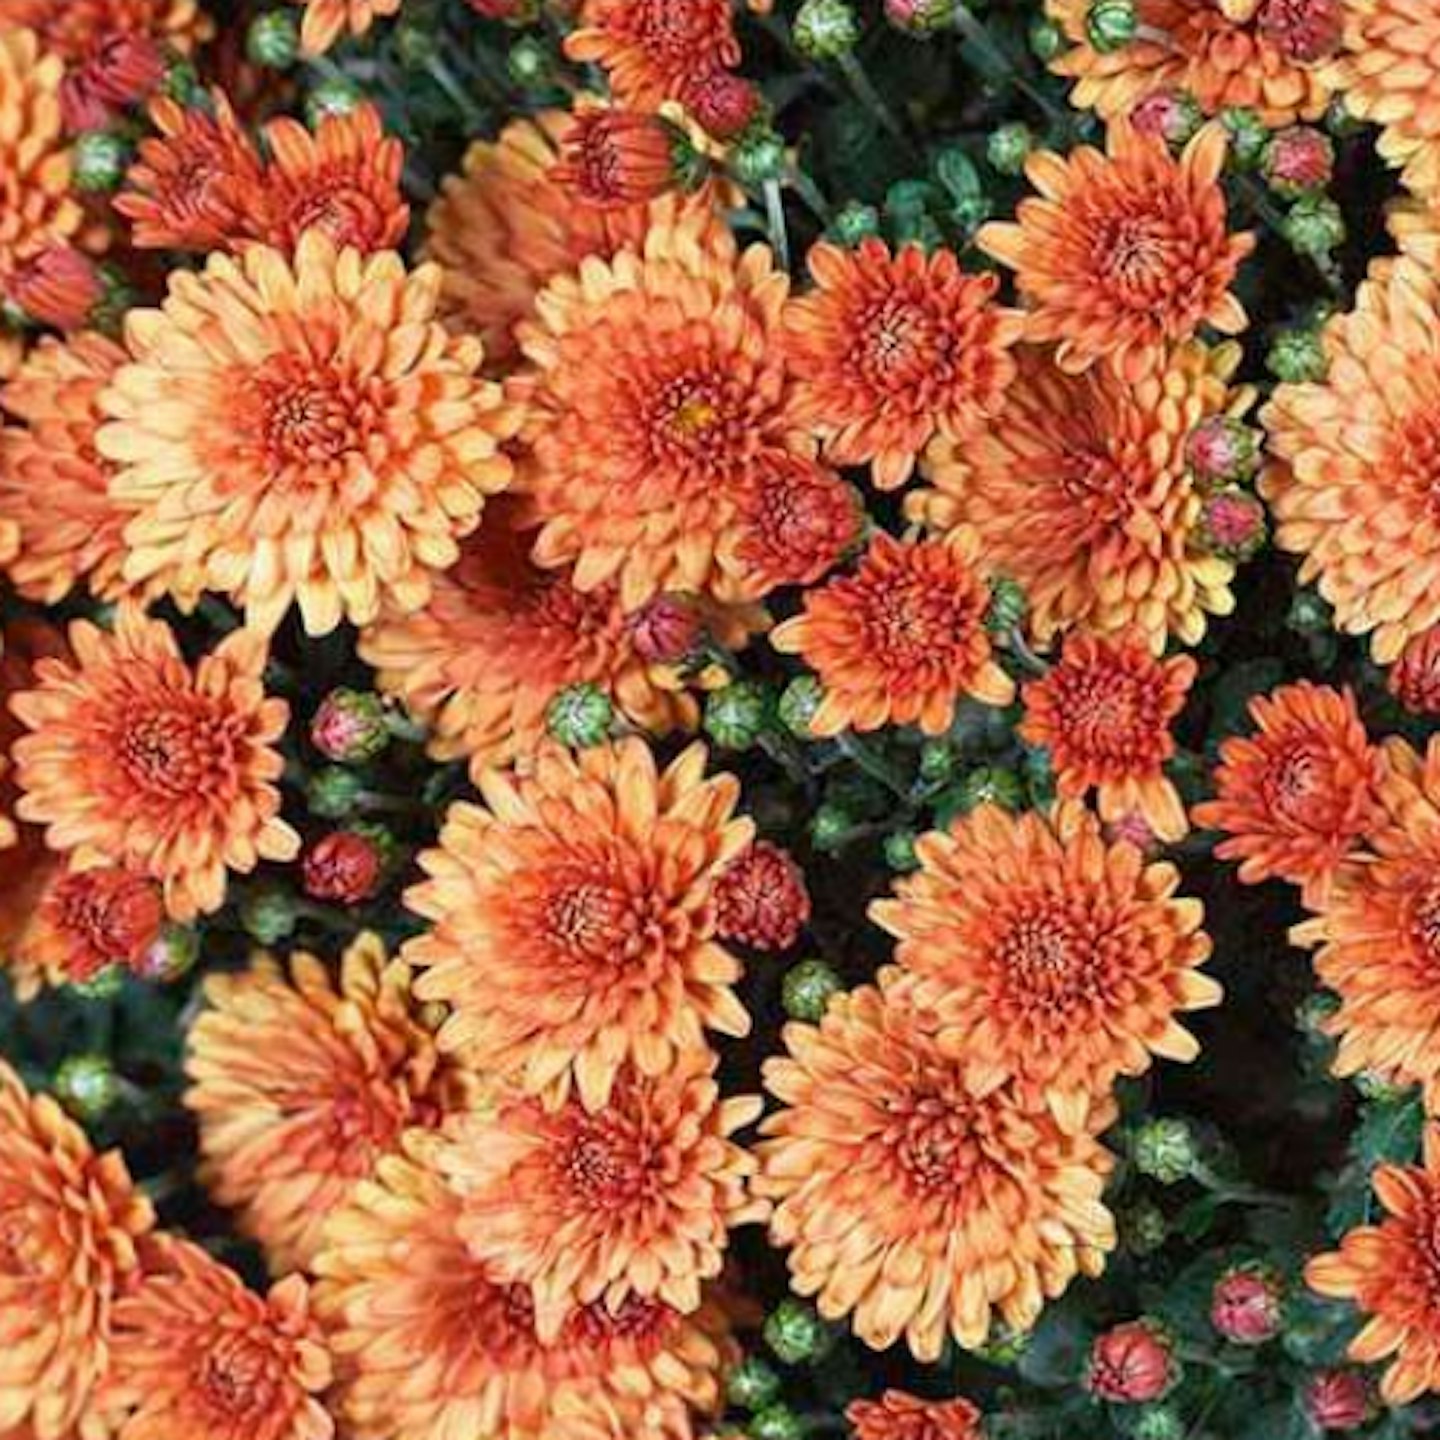 Chrysanthemum u2018Santanosu2019